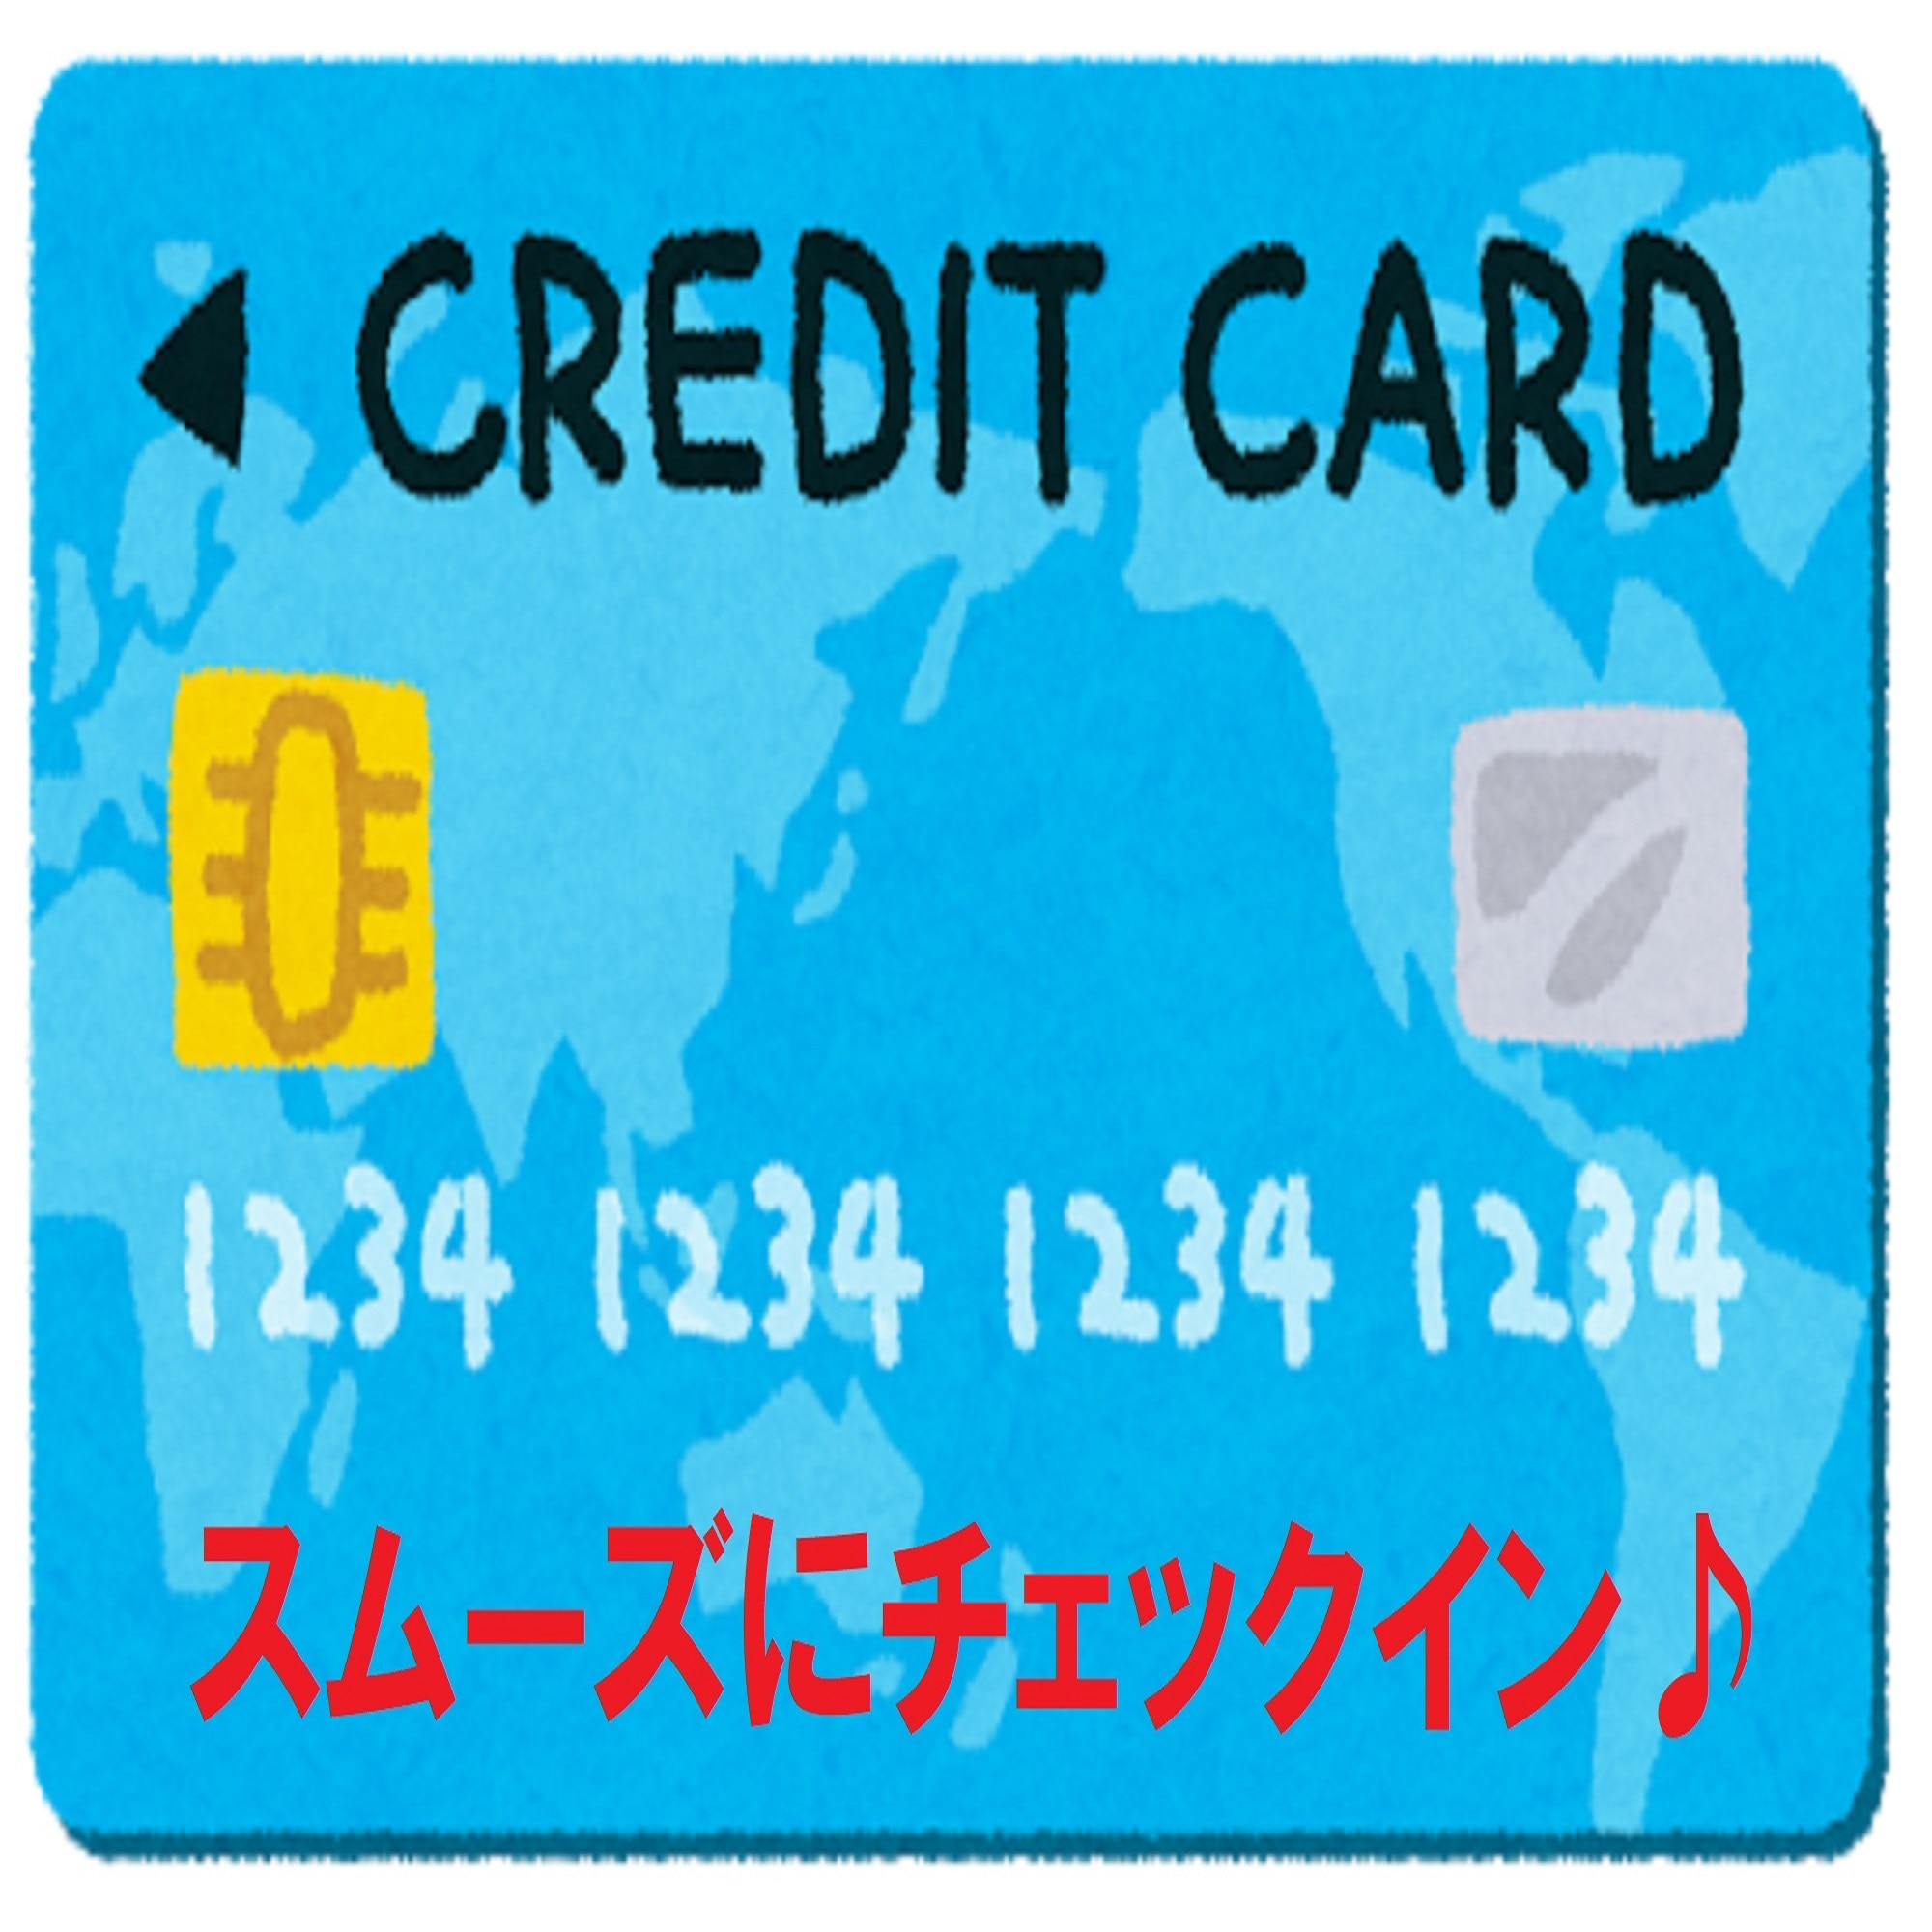 Paket pembayaran kartu online